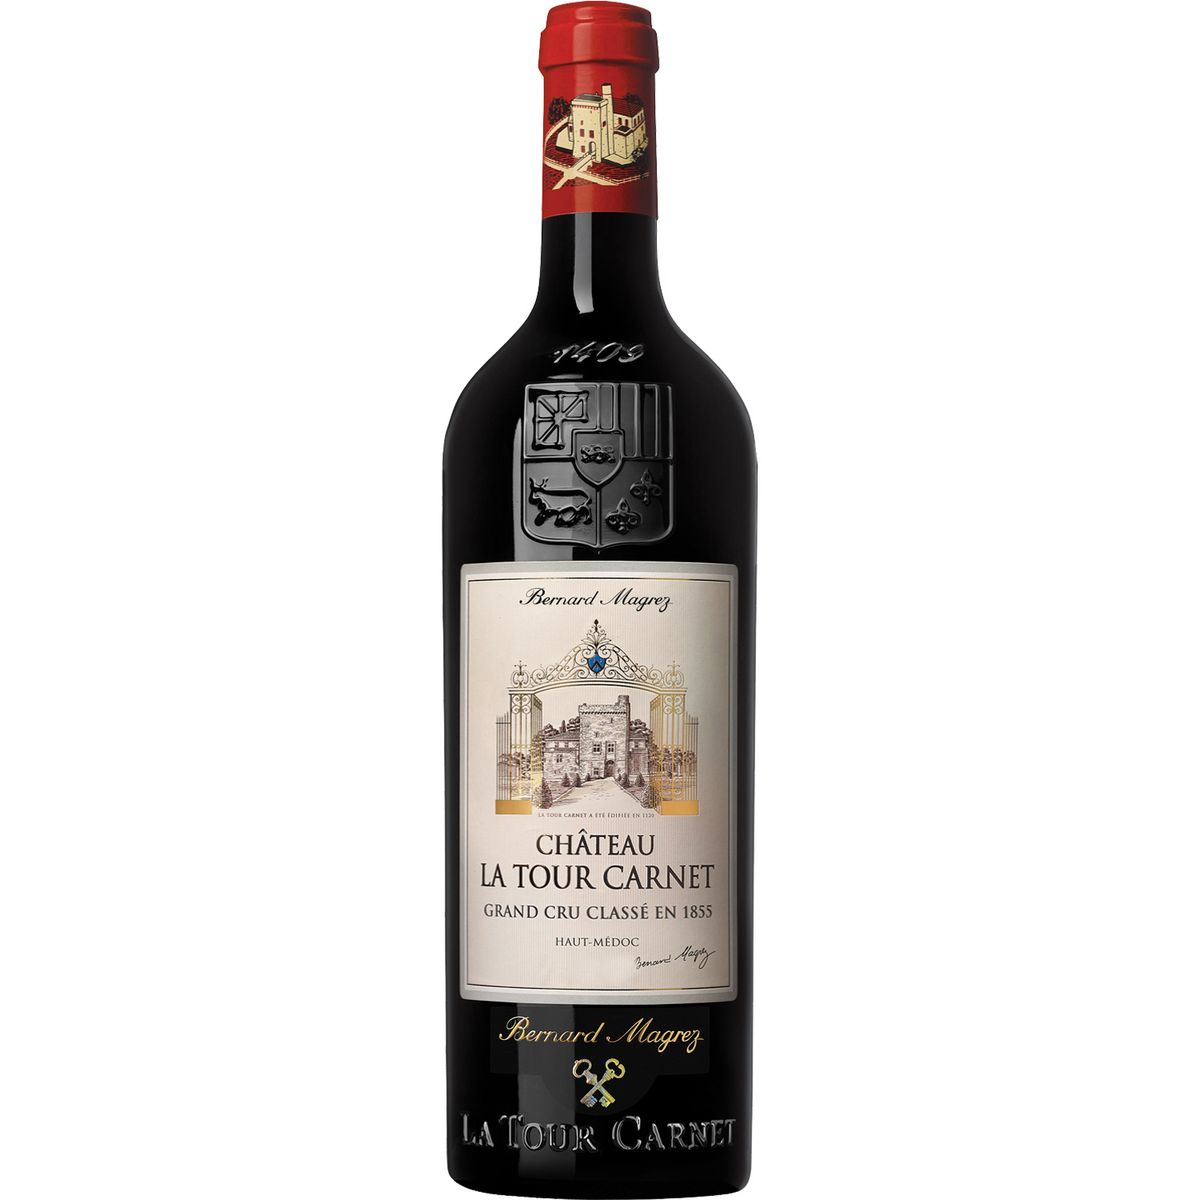 Vin rouge AOP Haut-Médoc Château La Tour Carnet grand cru classé 2015 75cl